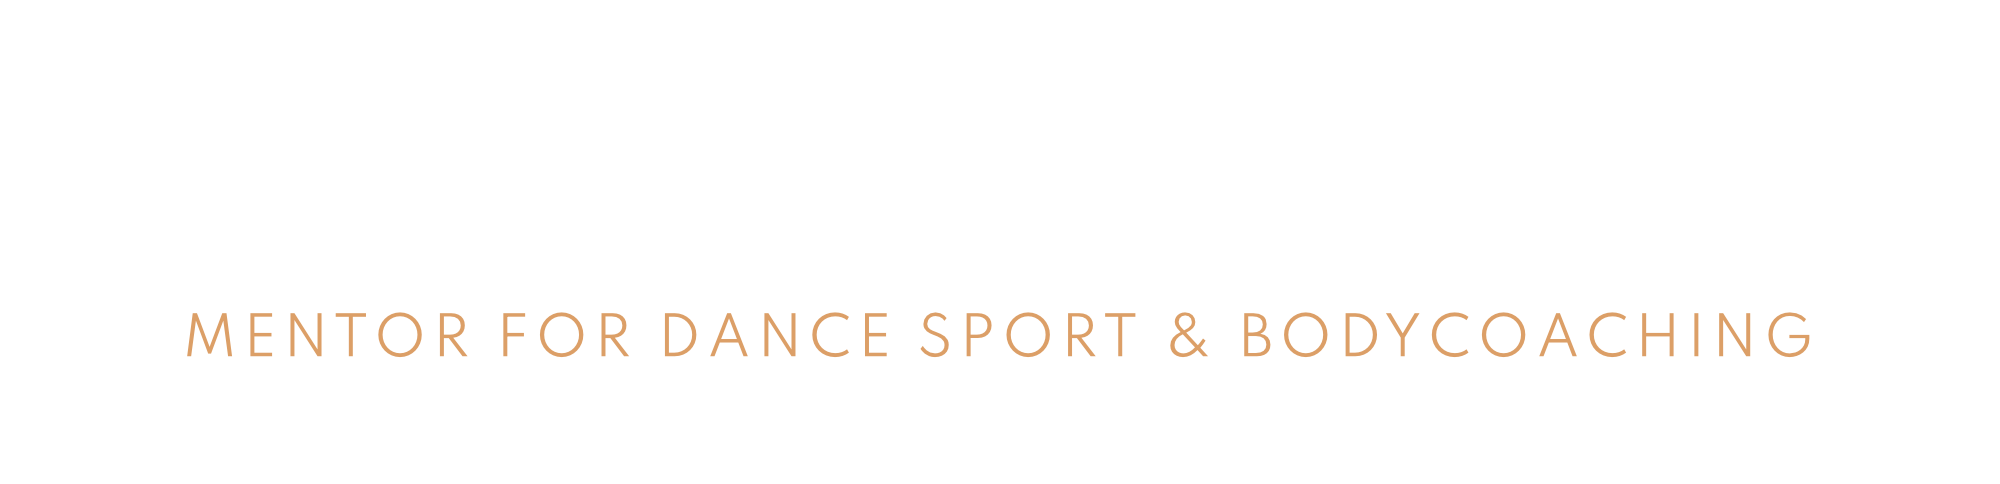 holger_nitsche_mentor_dancesport_bodycoach_logo